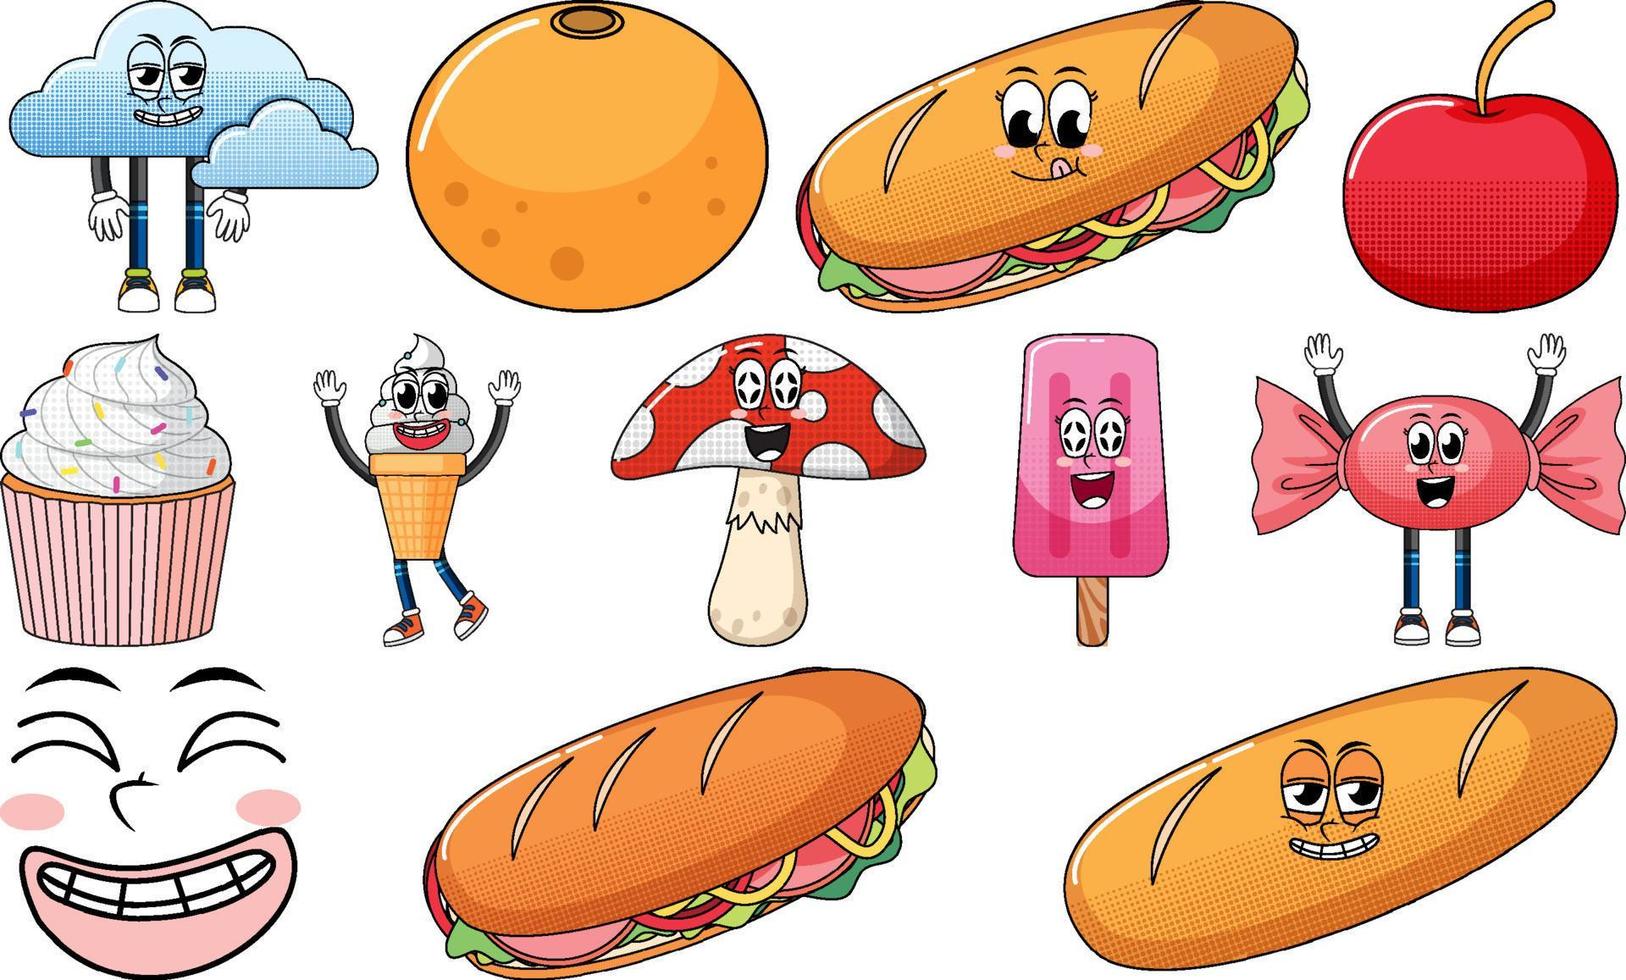 impostato di oggetti e Alimenti cartone animato personaggi vettore